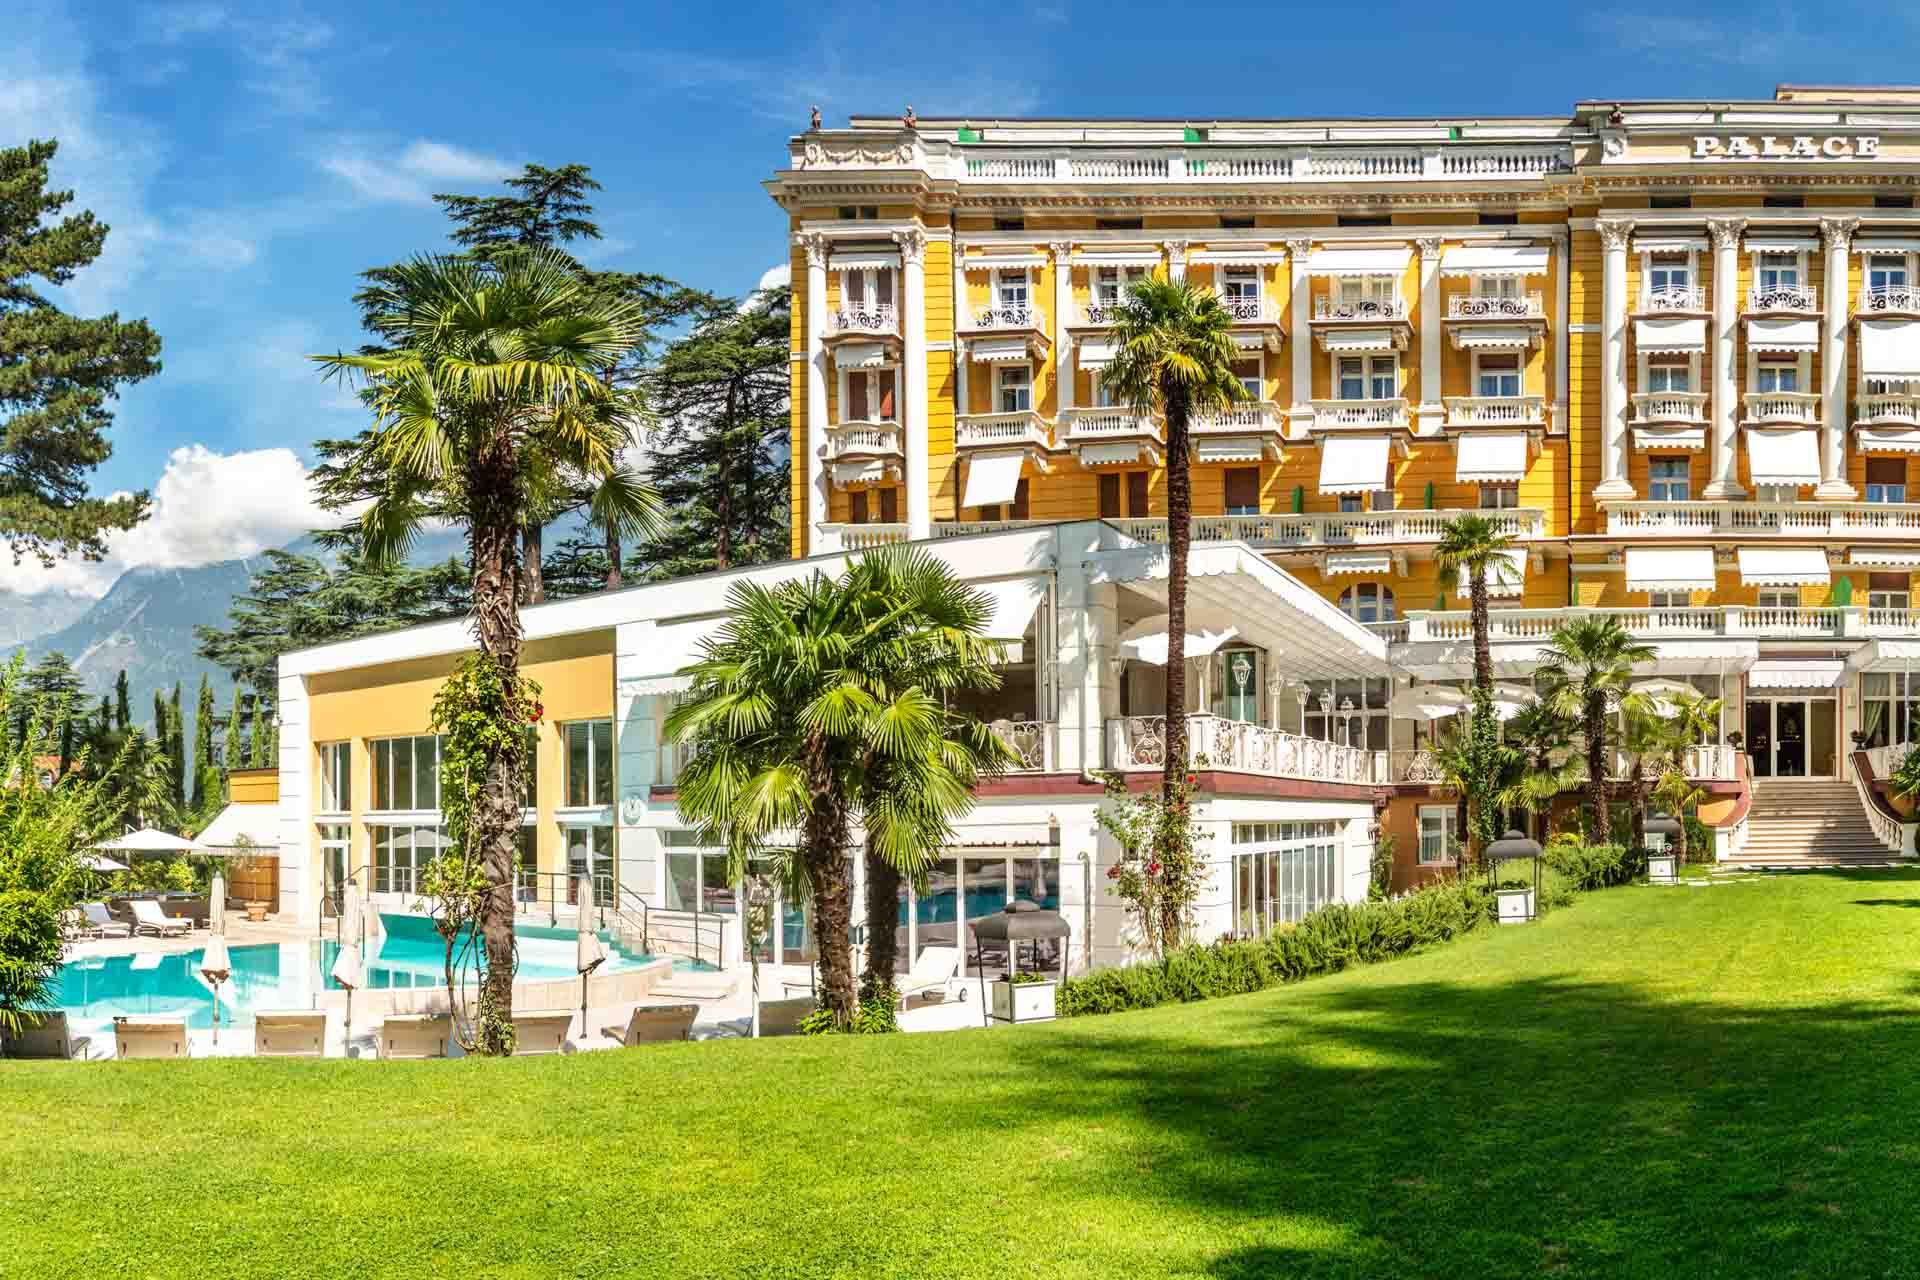 Le parc de l’hôtel et sa piscine © Merano Palace